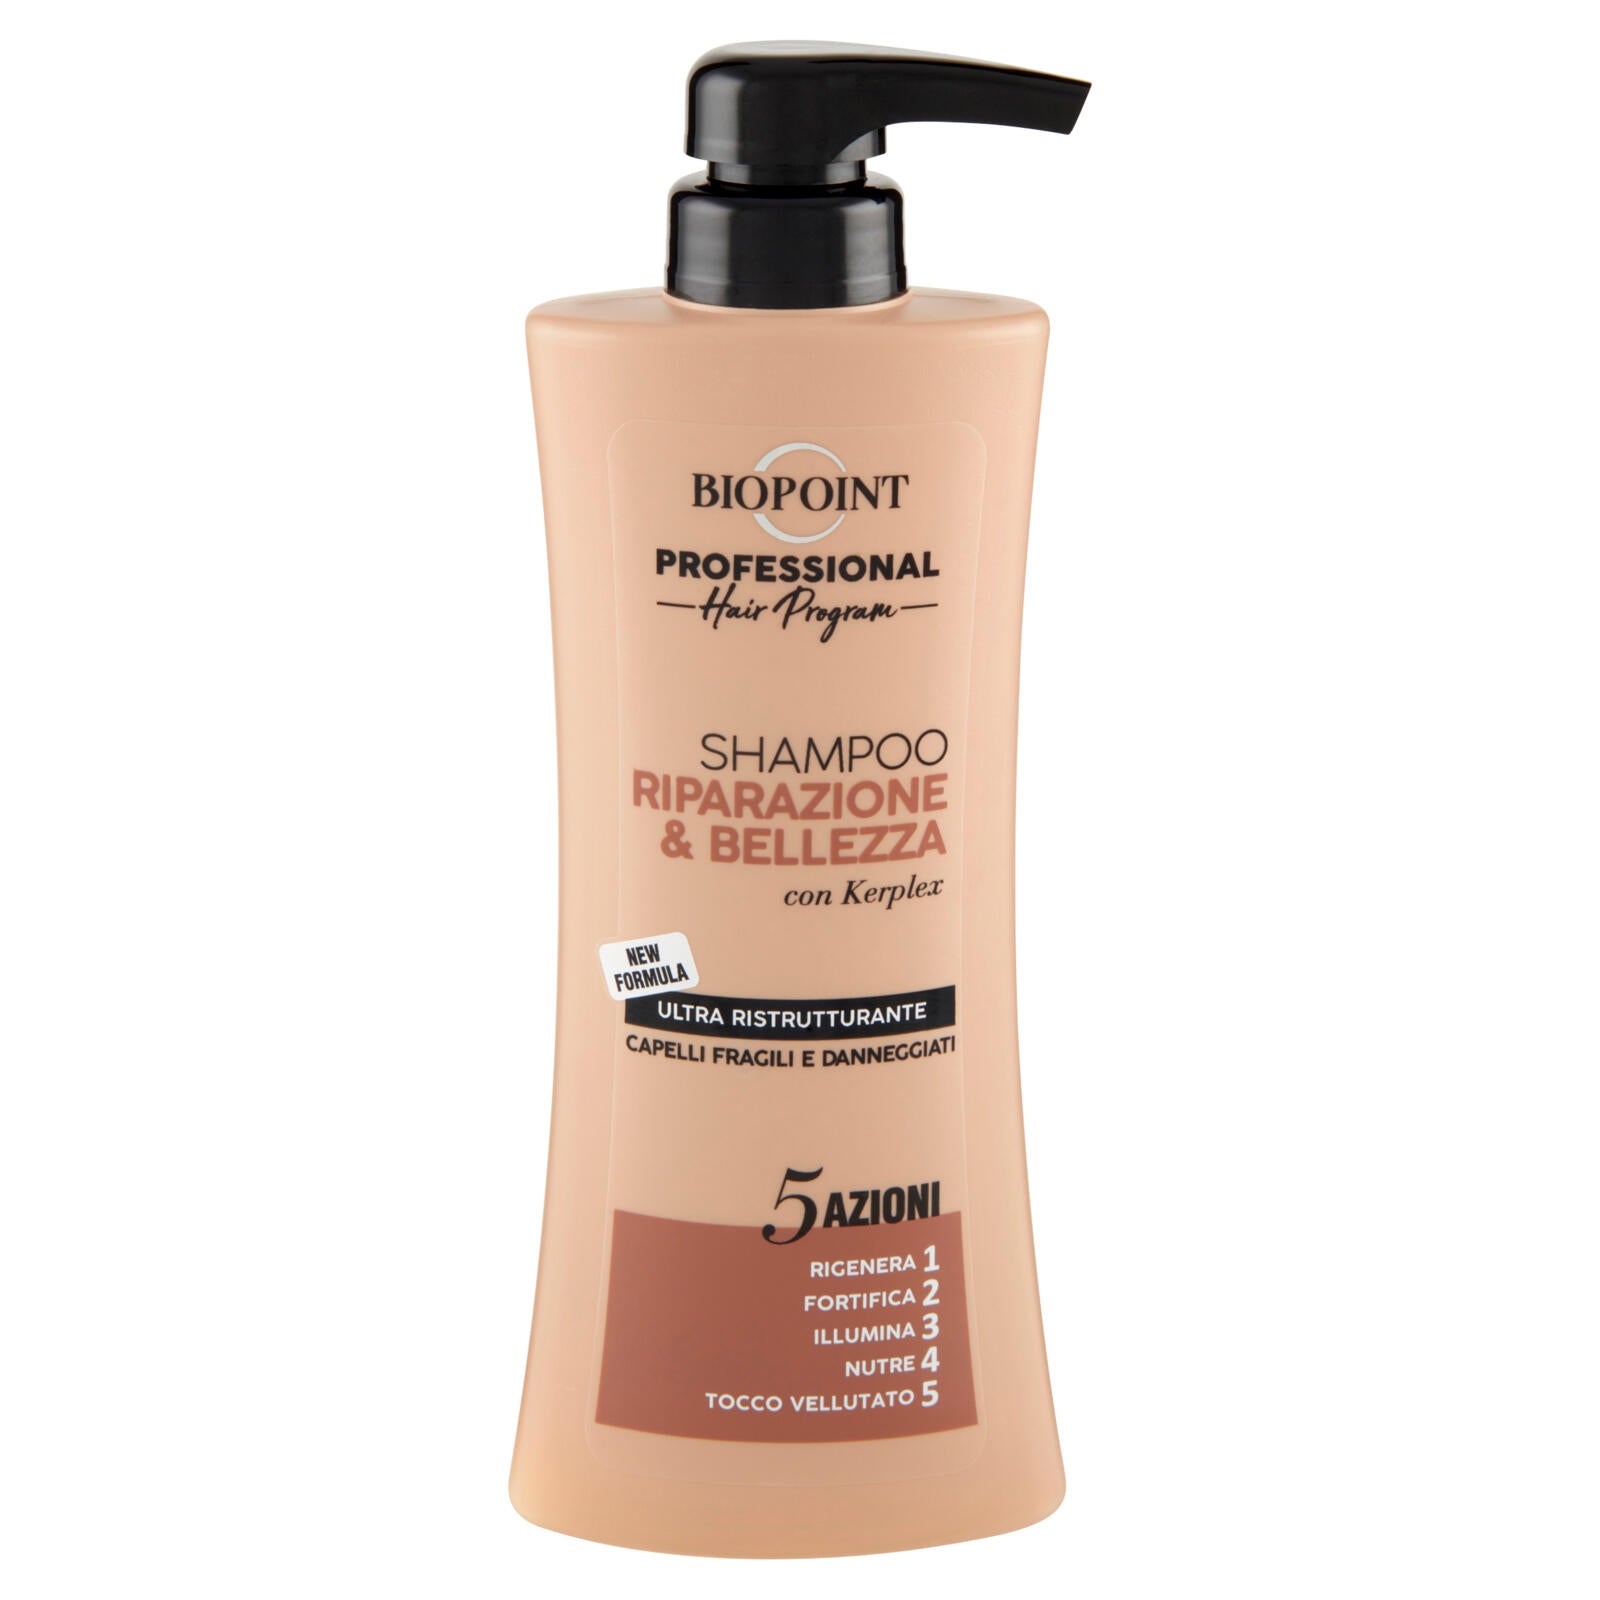 Biopoint Professional Hair Program Shampoo Riparazione & Bellezza 400 ml